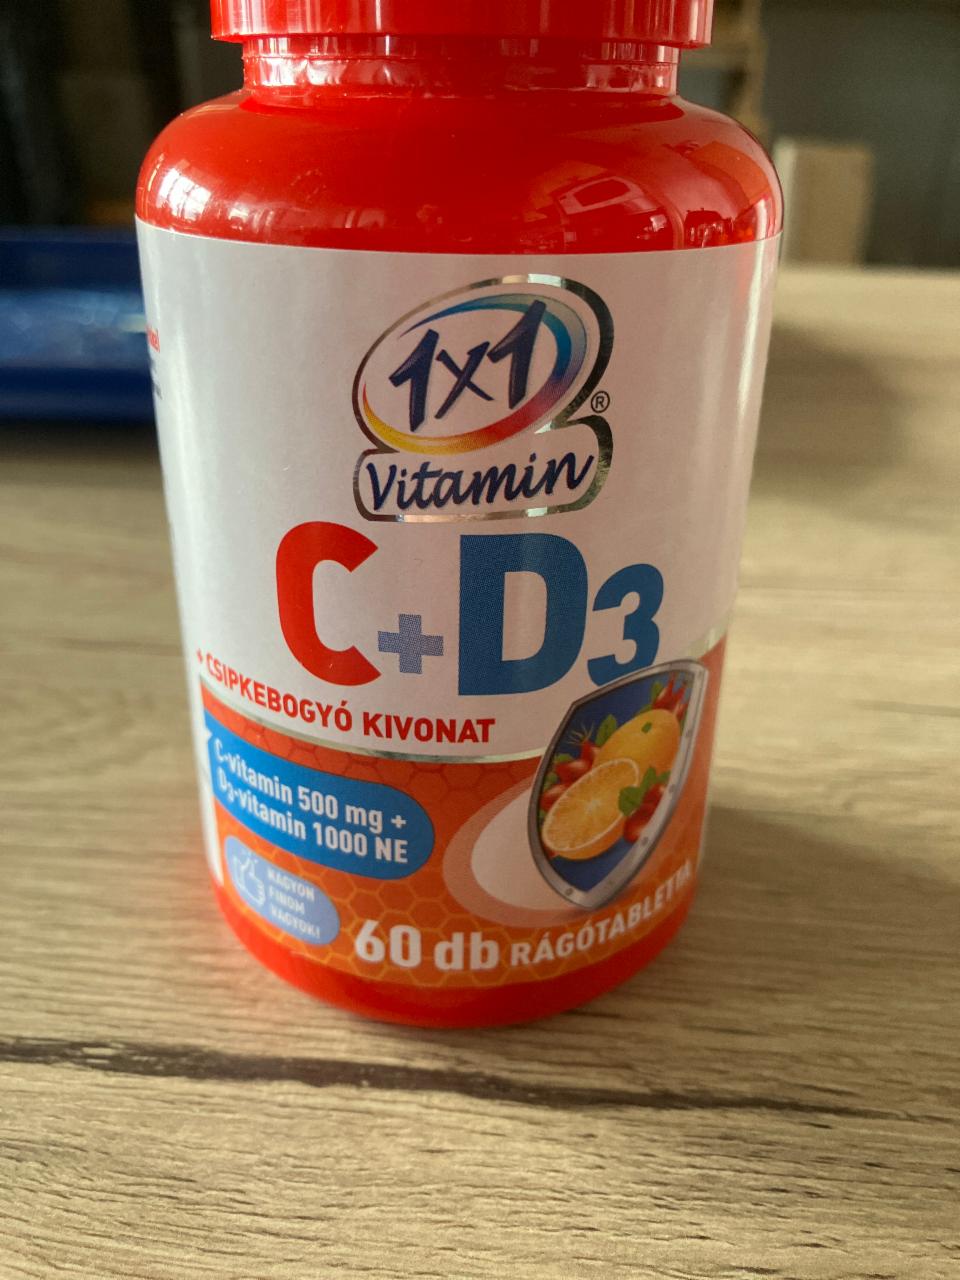 Képek - C+D3 1x1 Vitamin